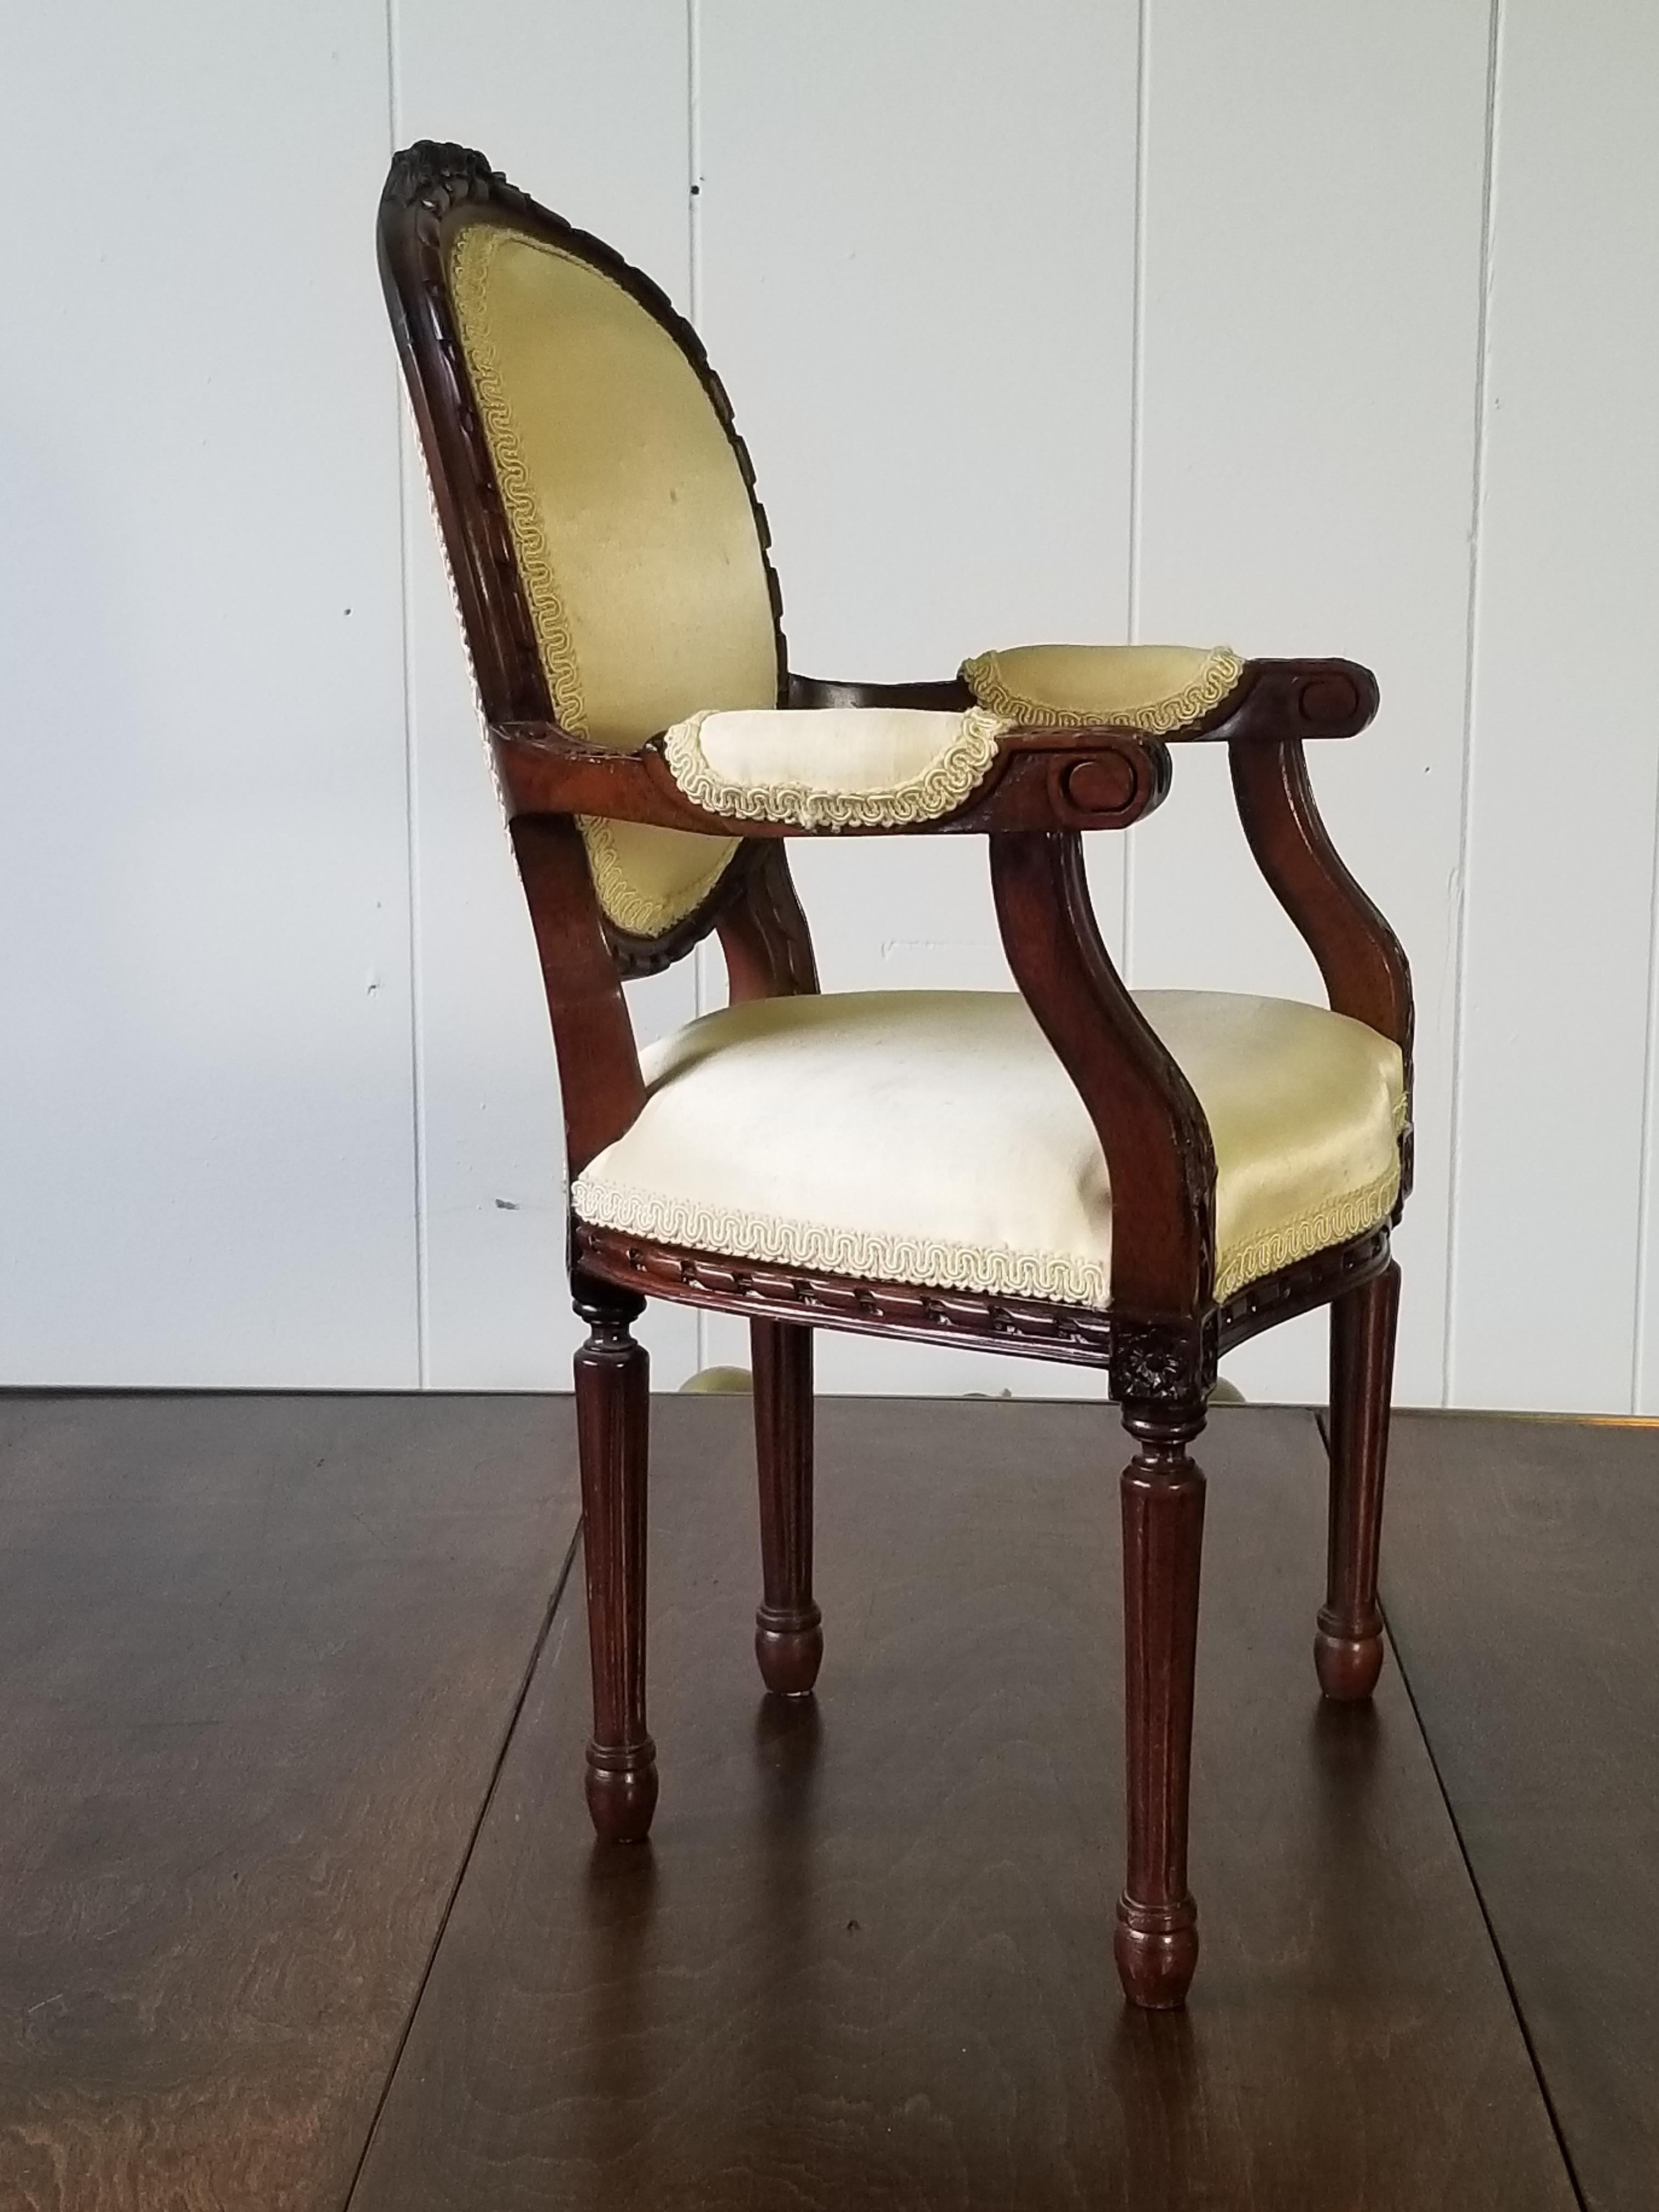 reproduction d'un fauteuil miniature du 20e siècle de style Louis XVI. Le fauteuil est doté d'un dossier ovale sculpté de rubans et d'un nœud papillon sur la crête. Les bras descendent vers des rosettes sculptées et un tablier sculpté de rubans. La